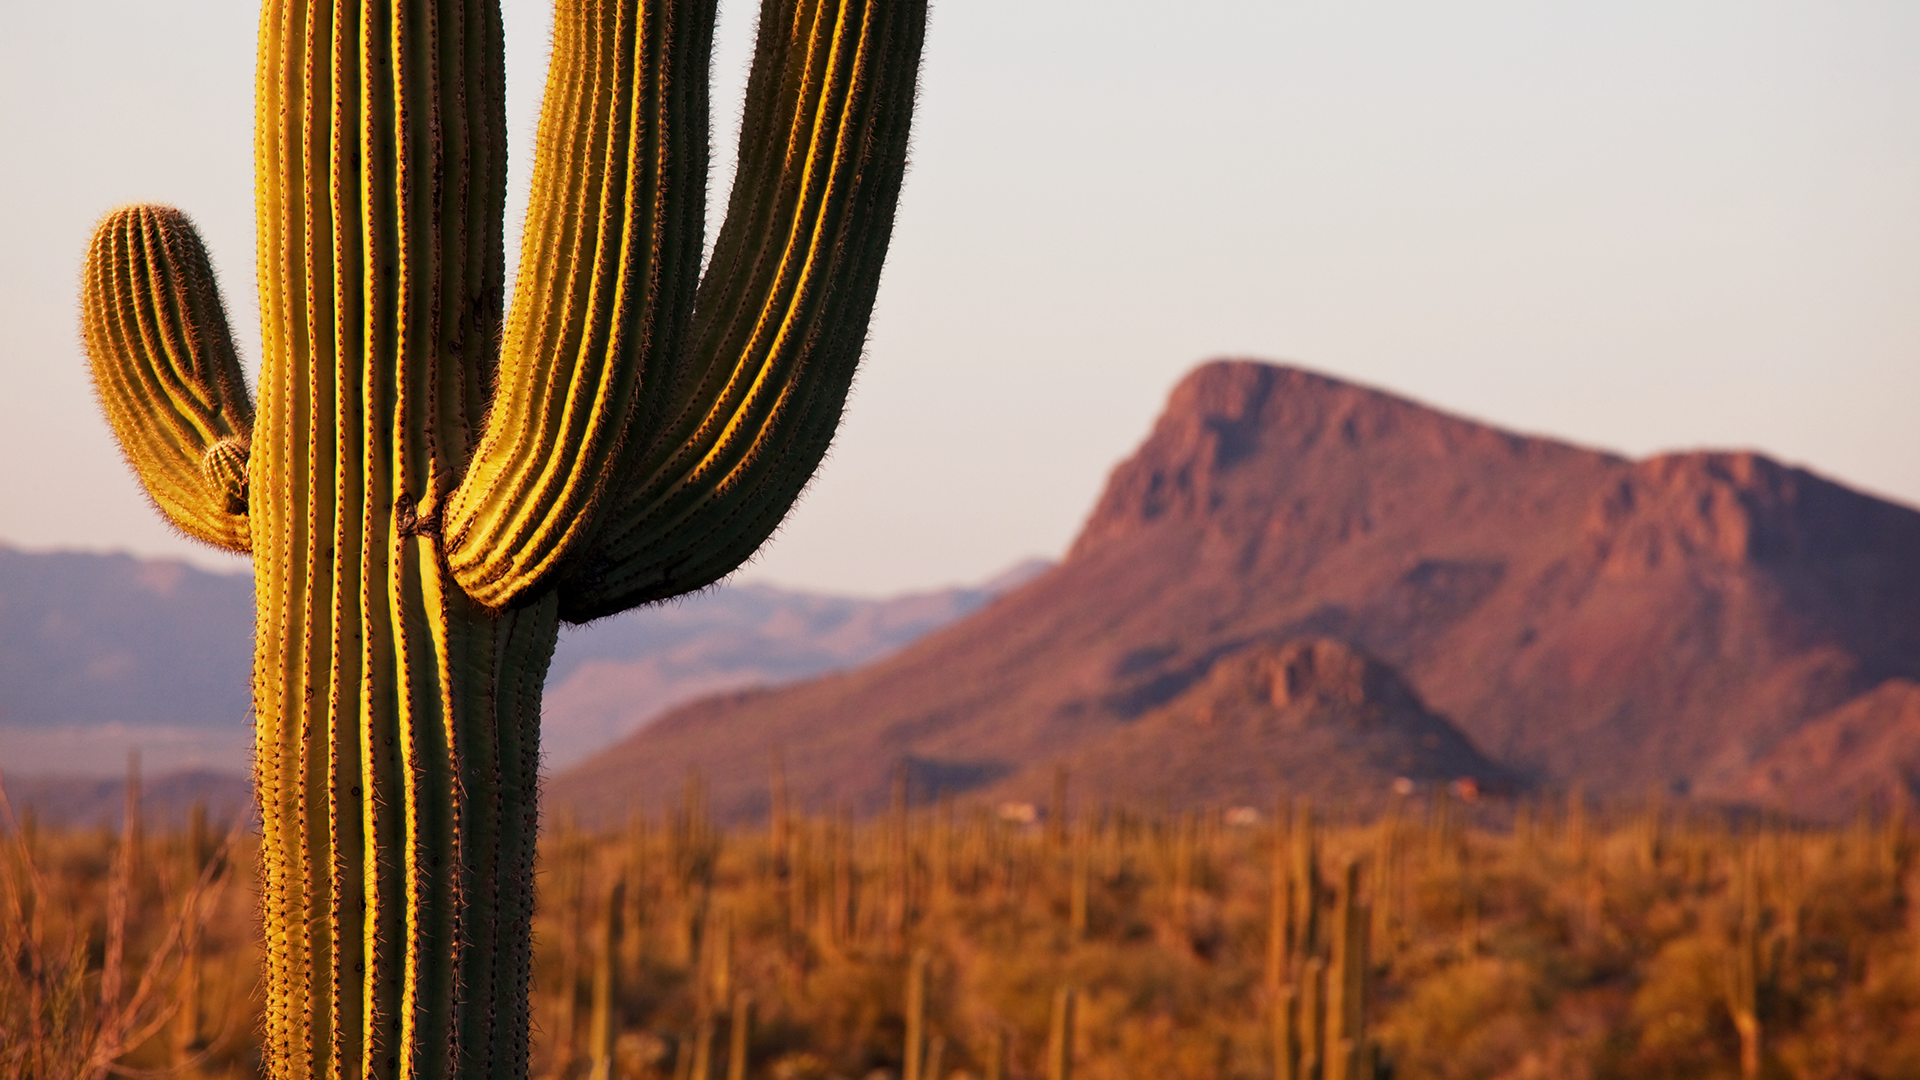 Saguaro Cacti, Saguaro National Park